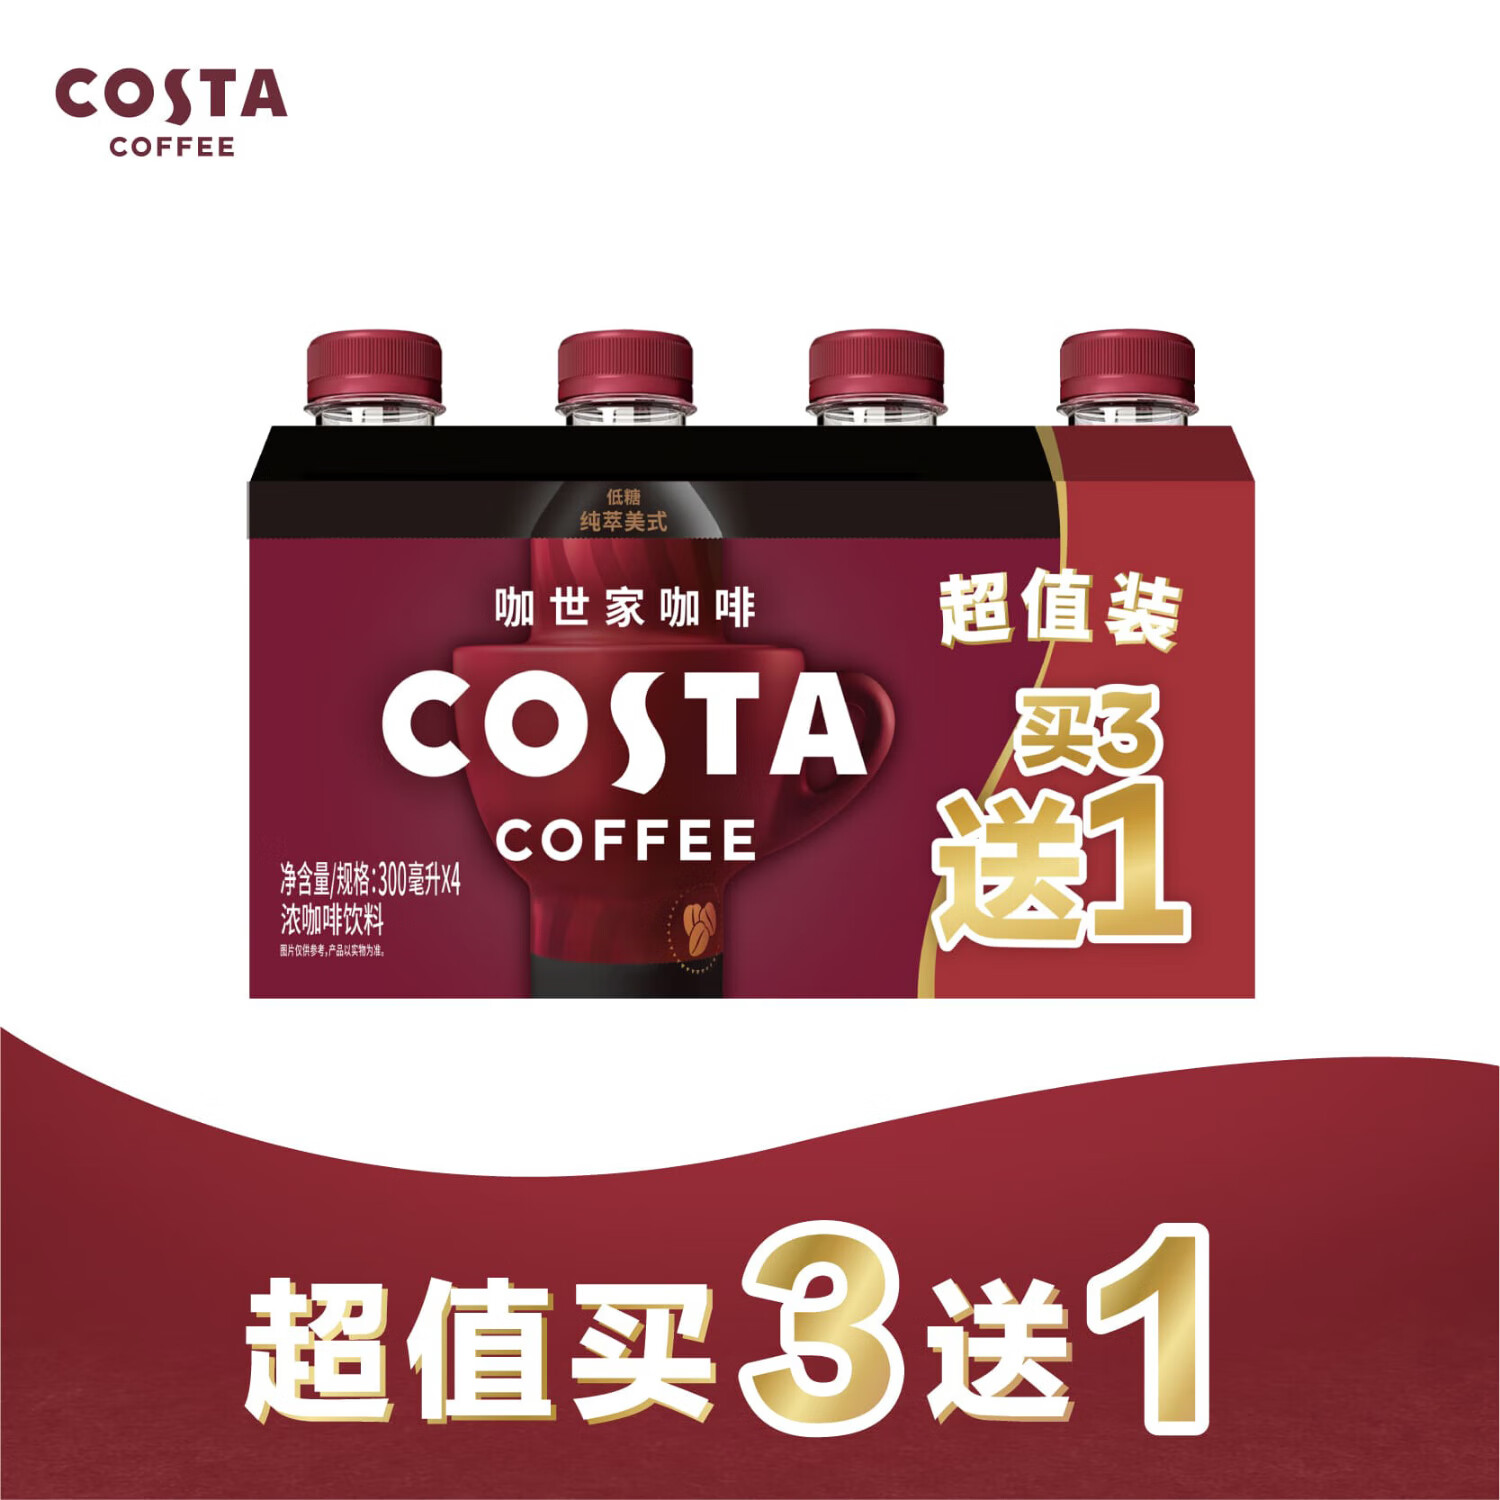 Fanta 芬达 纯萃美式浓咖啡饮料 3+1超值装 13.9元